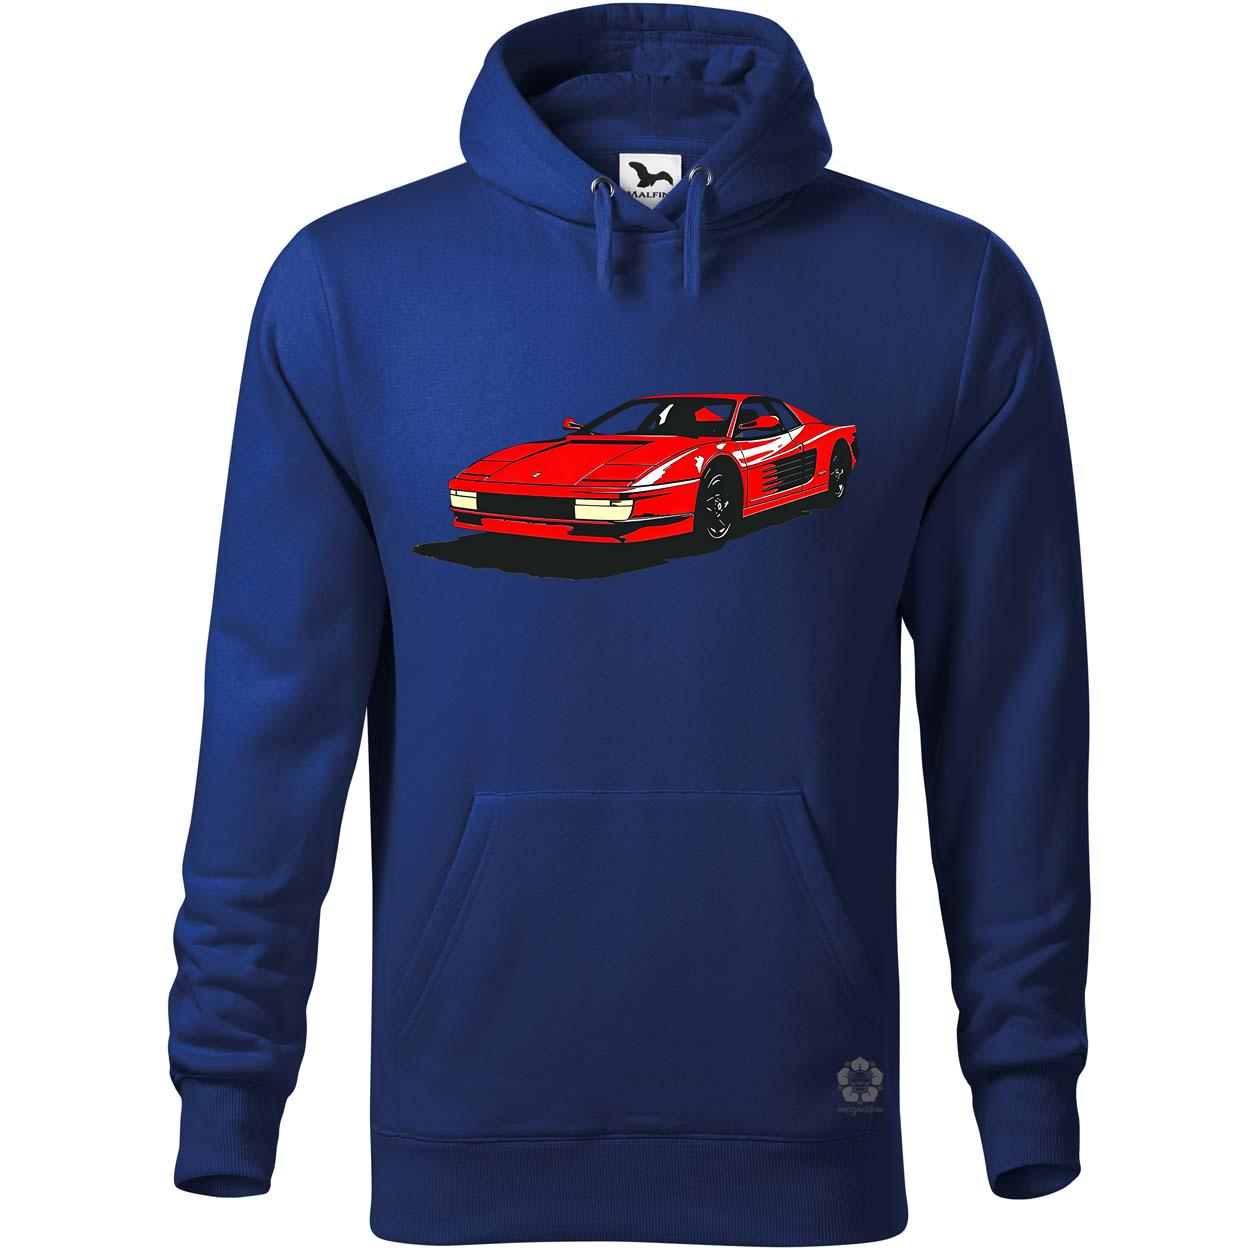 Ferrari Testarossa rajz v6